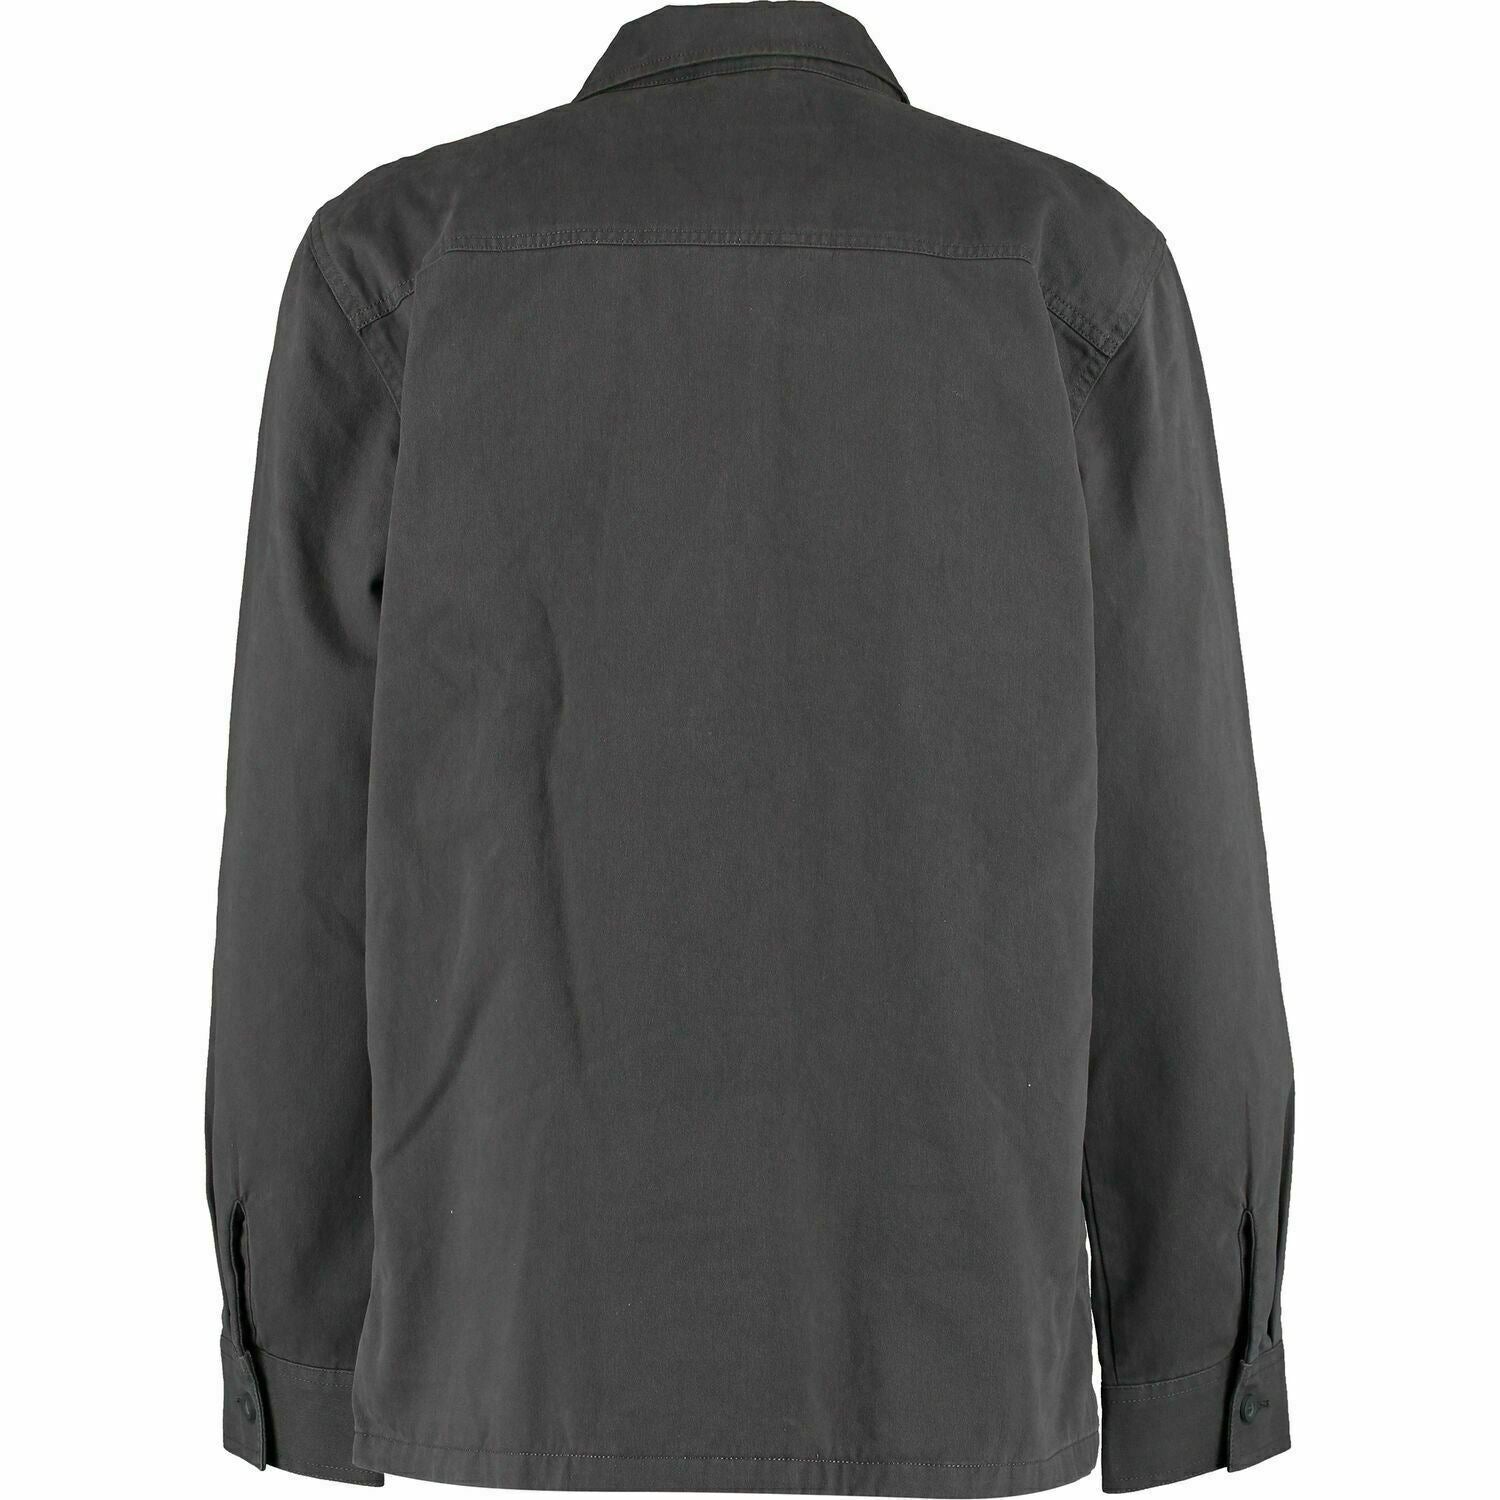 VANS Men's BELFAIR II Jacket, Cotton Brushed Twill, Asphalt Grey, size XS